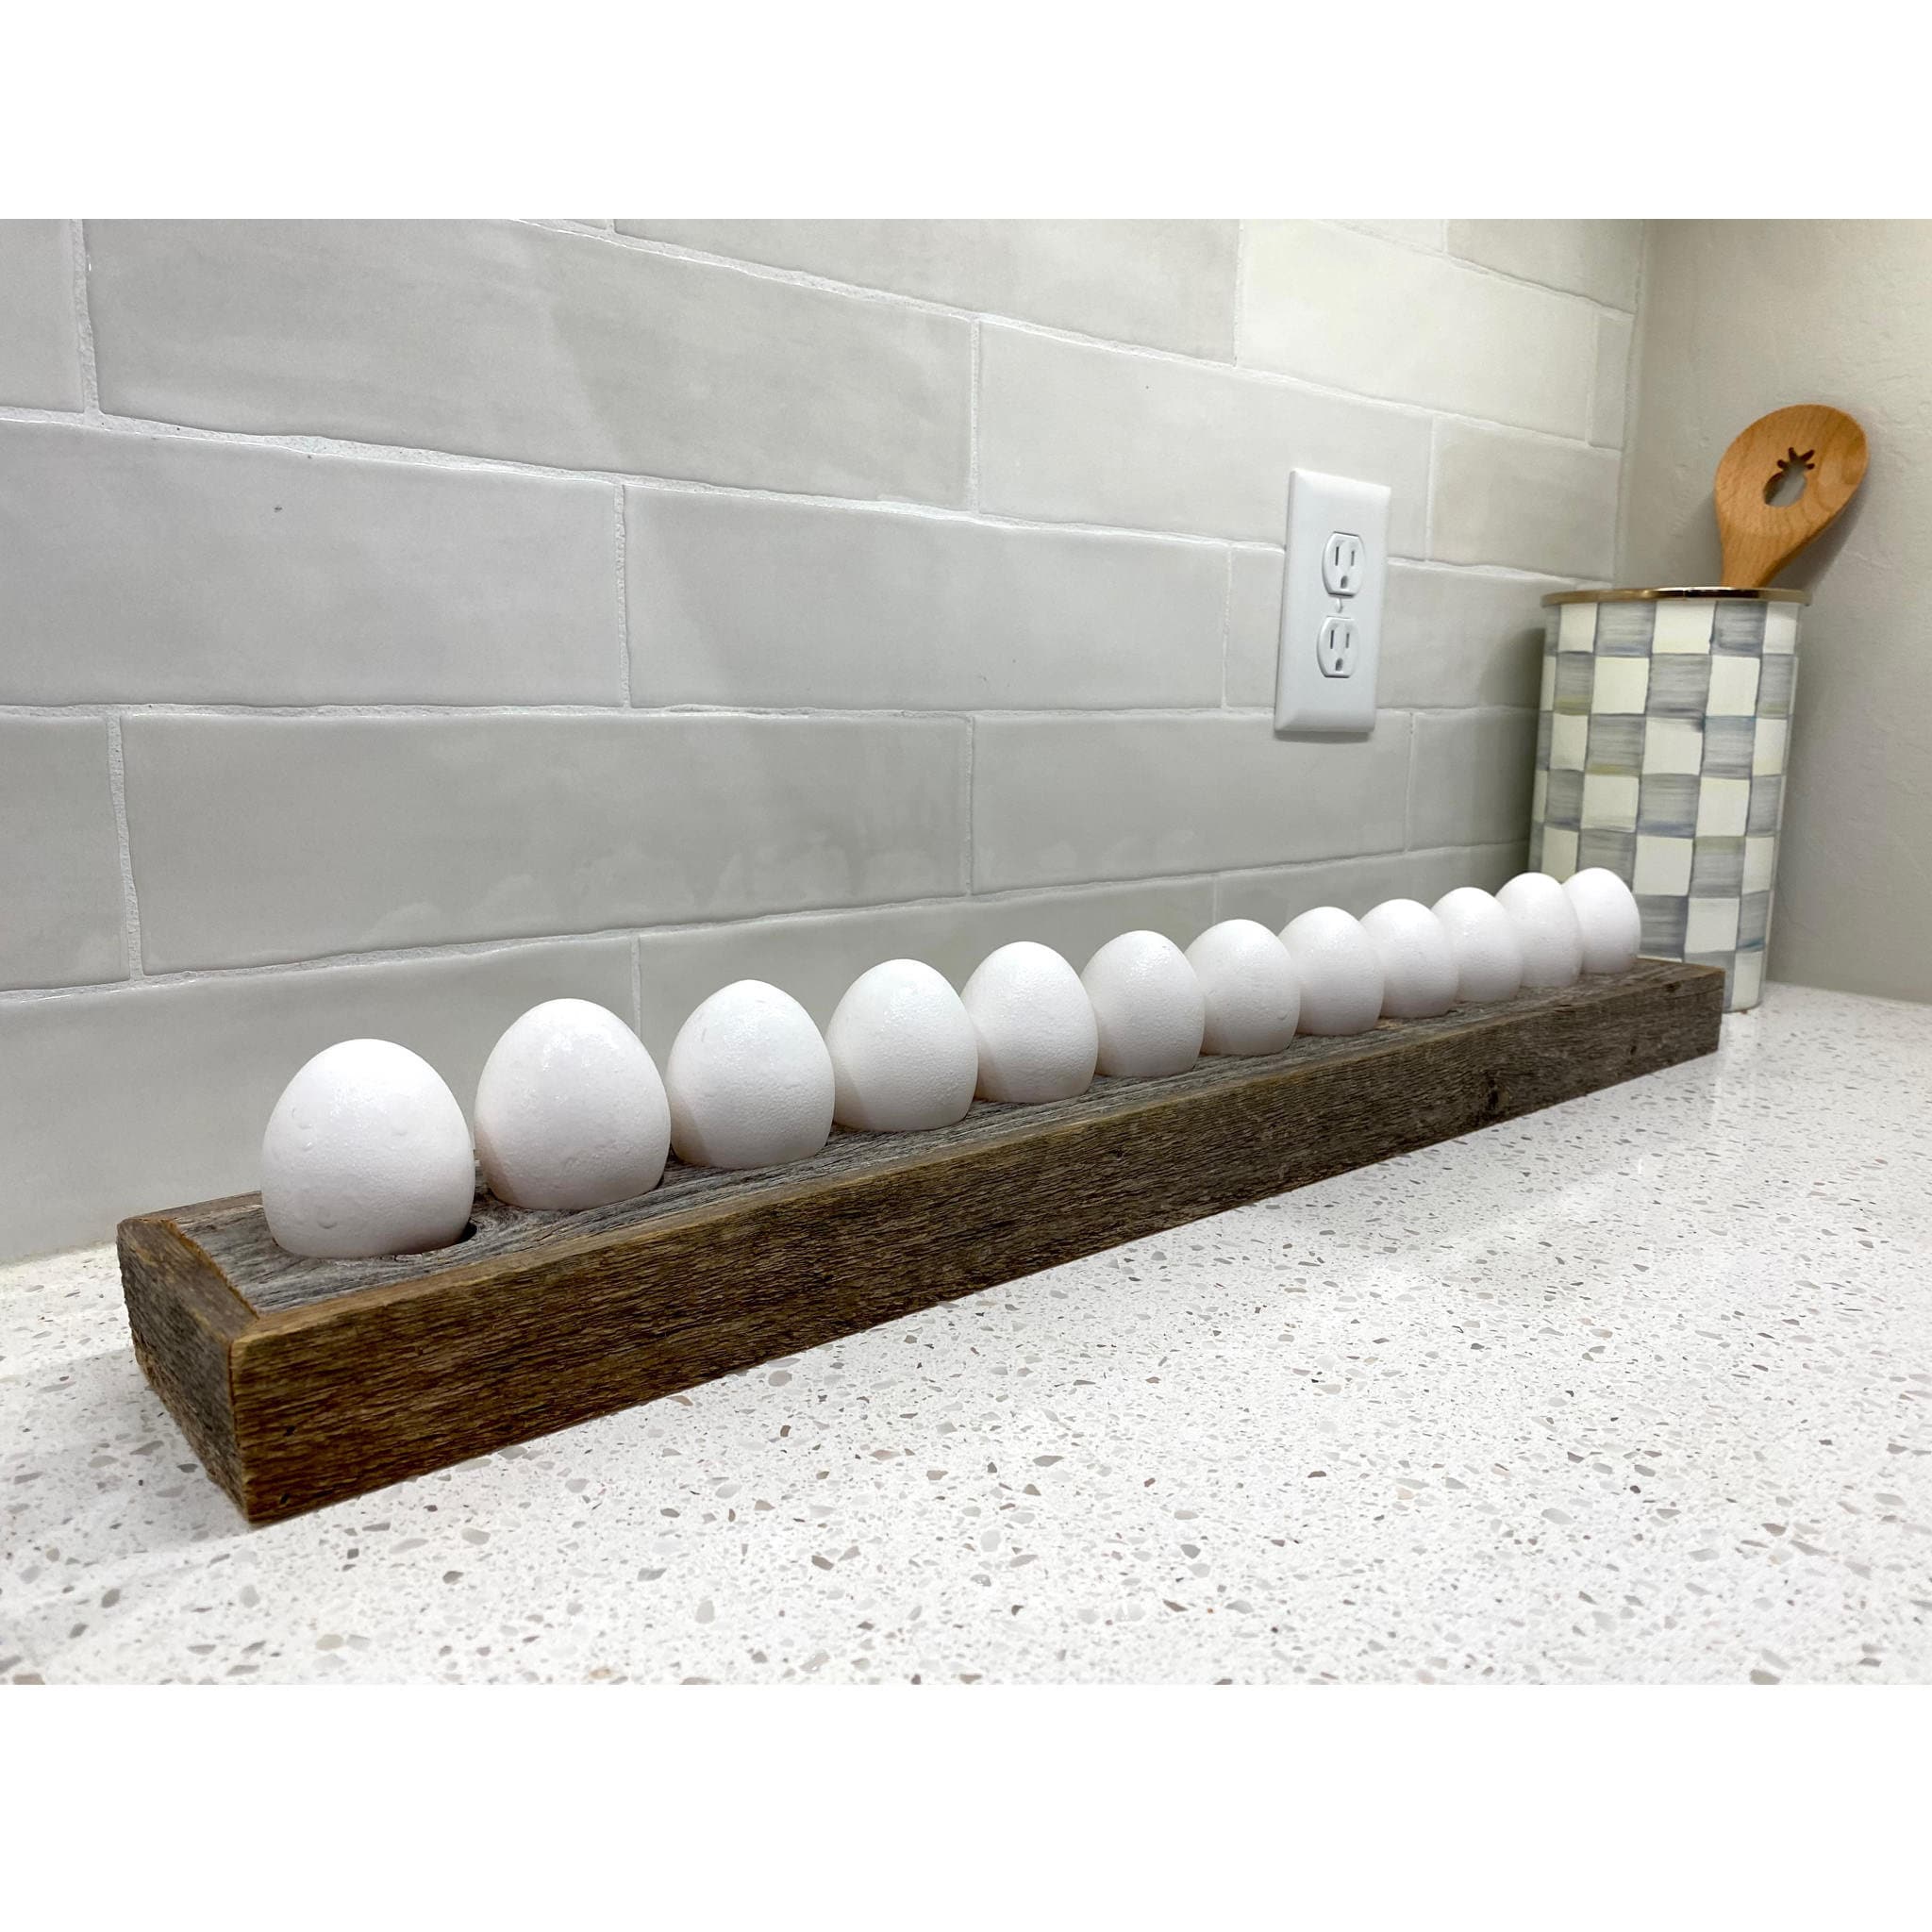 Cedar Egg Holder, Countertop Egg Rack for Fresh Eggs